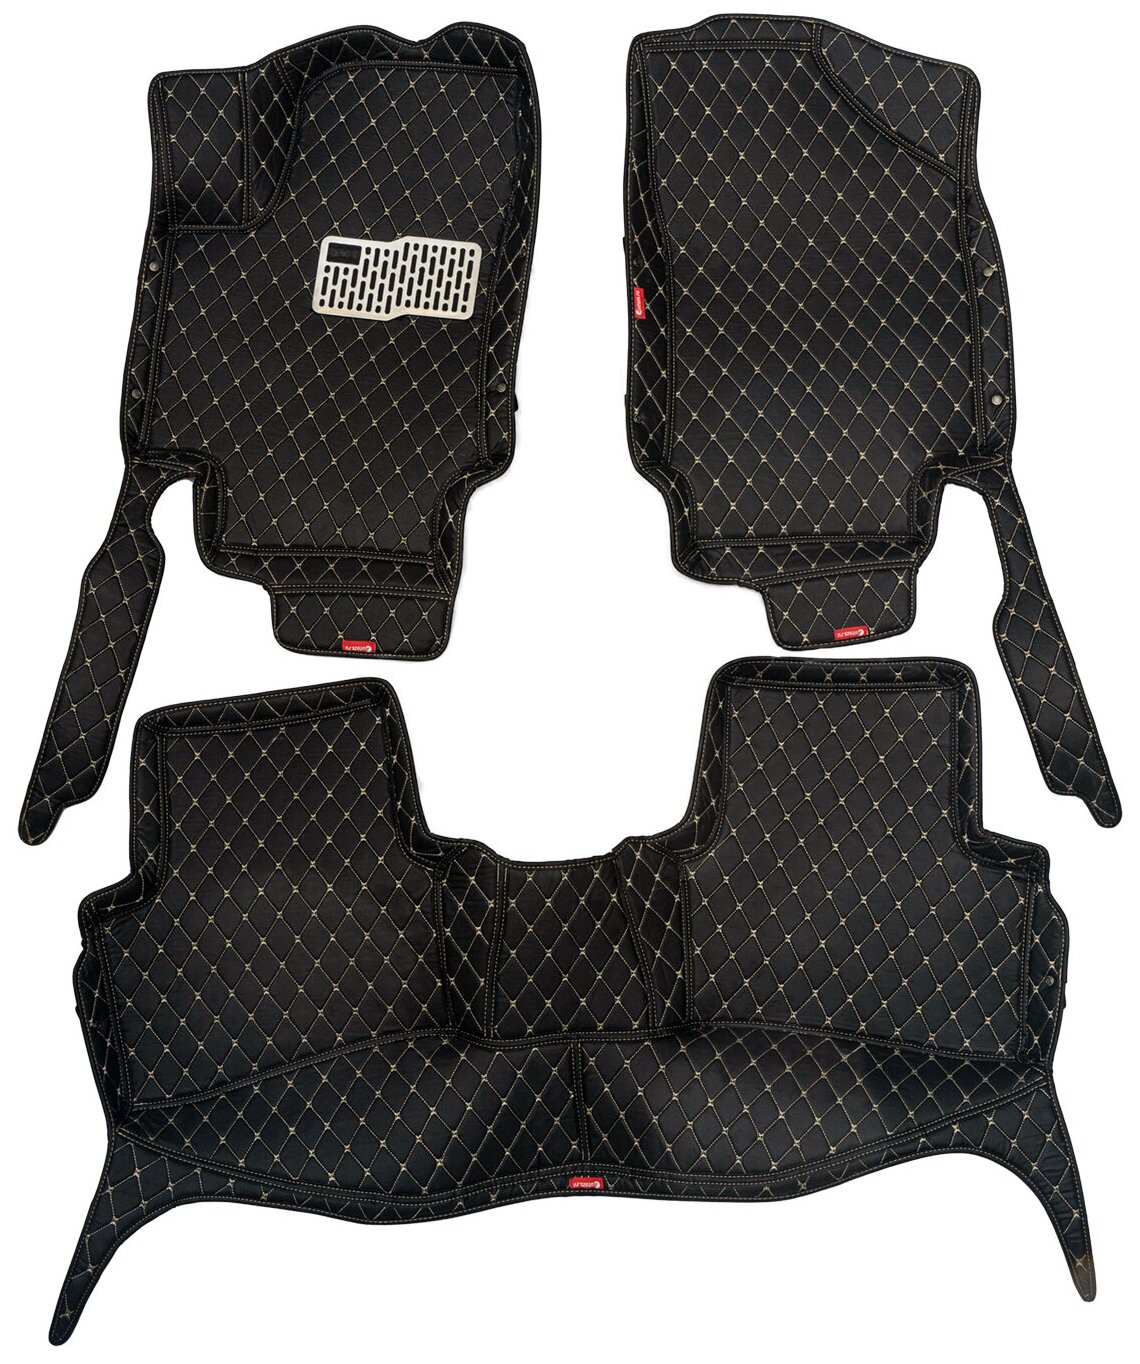 Кожаные 3D коврики Autozs Premium для Volkswagen Passat B8 (2014+) черные с бежевой строчкой / Фольксваген Пассат В8 (2014+) 3Д ковры в автомобиль